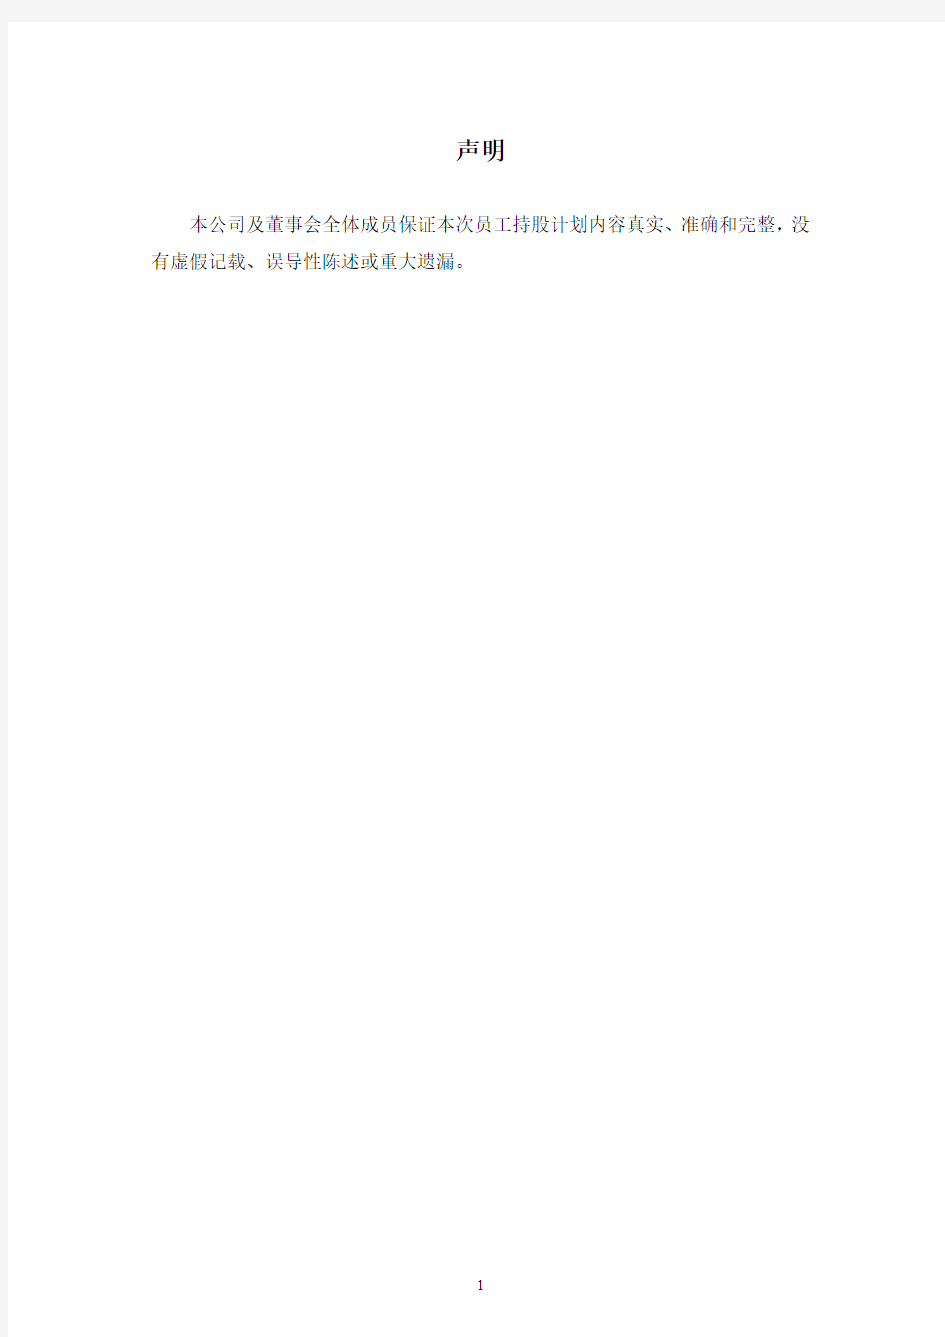 上港集团：2014年度员工持股计划(草案)(认购非公开发行股票方式)